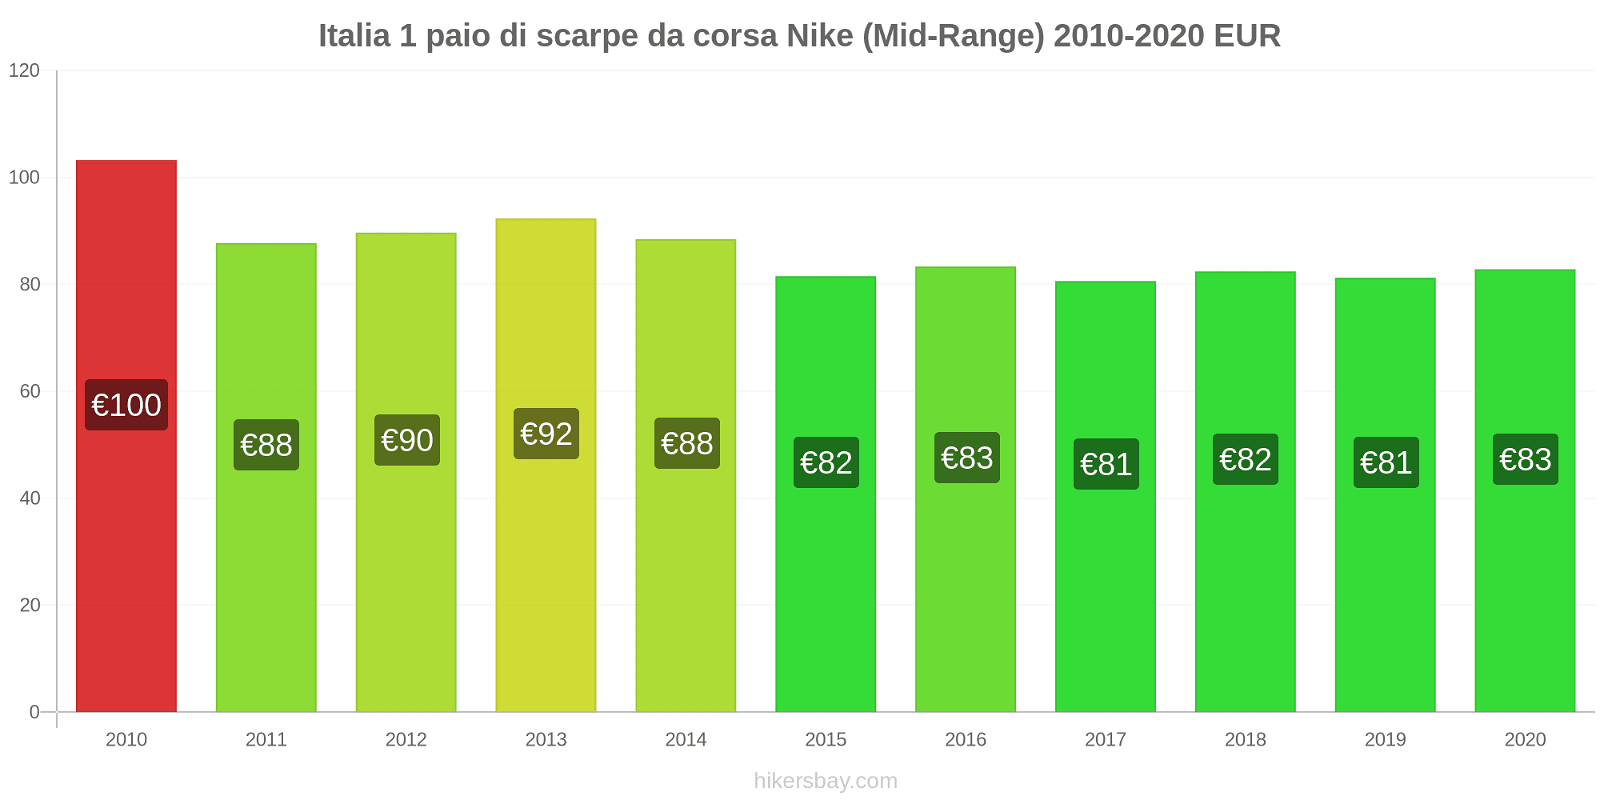 Italia variazioni di prezzo 1 paio di scarpe da corsa Nike (simile) hikersbay.com